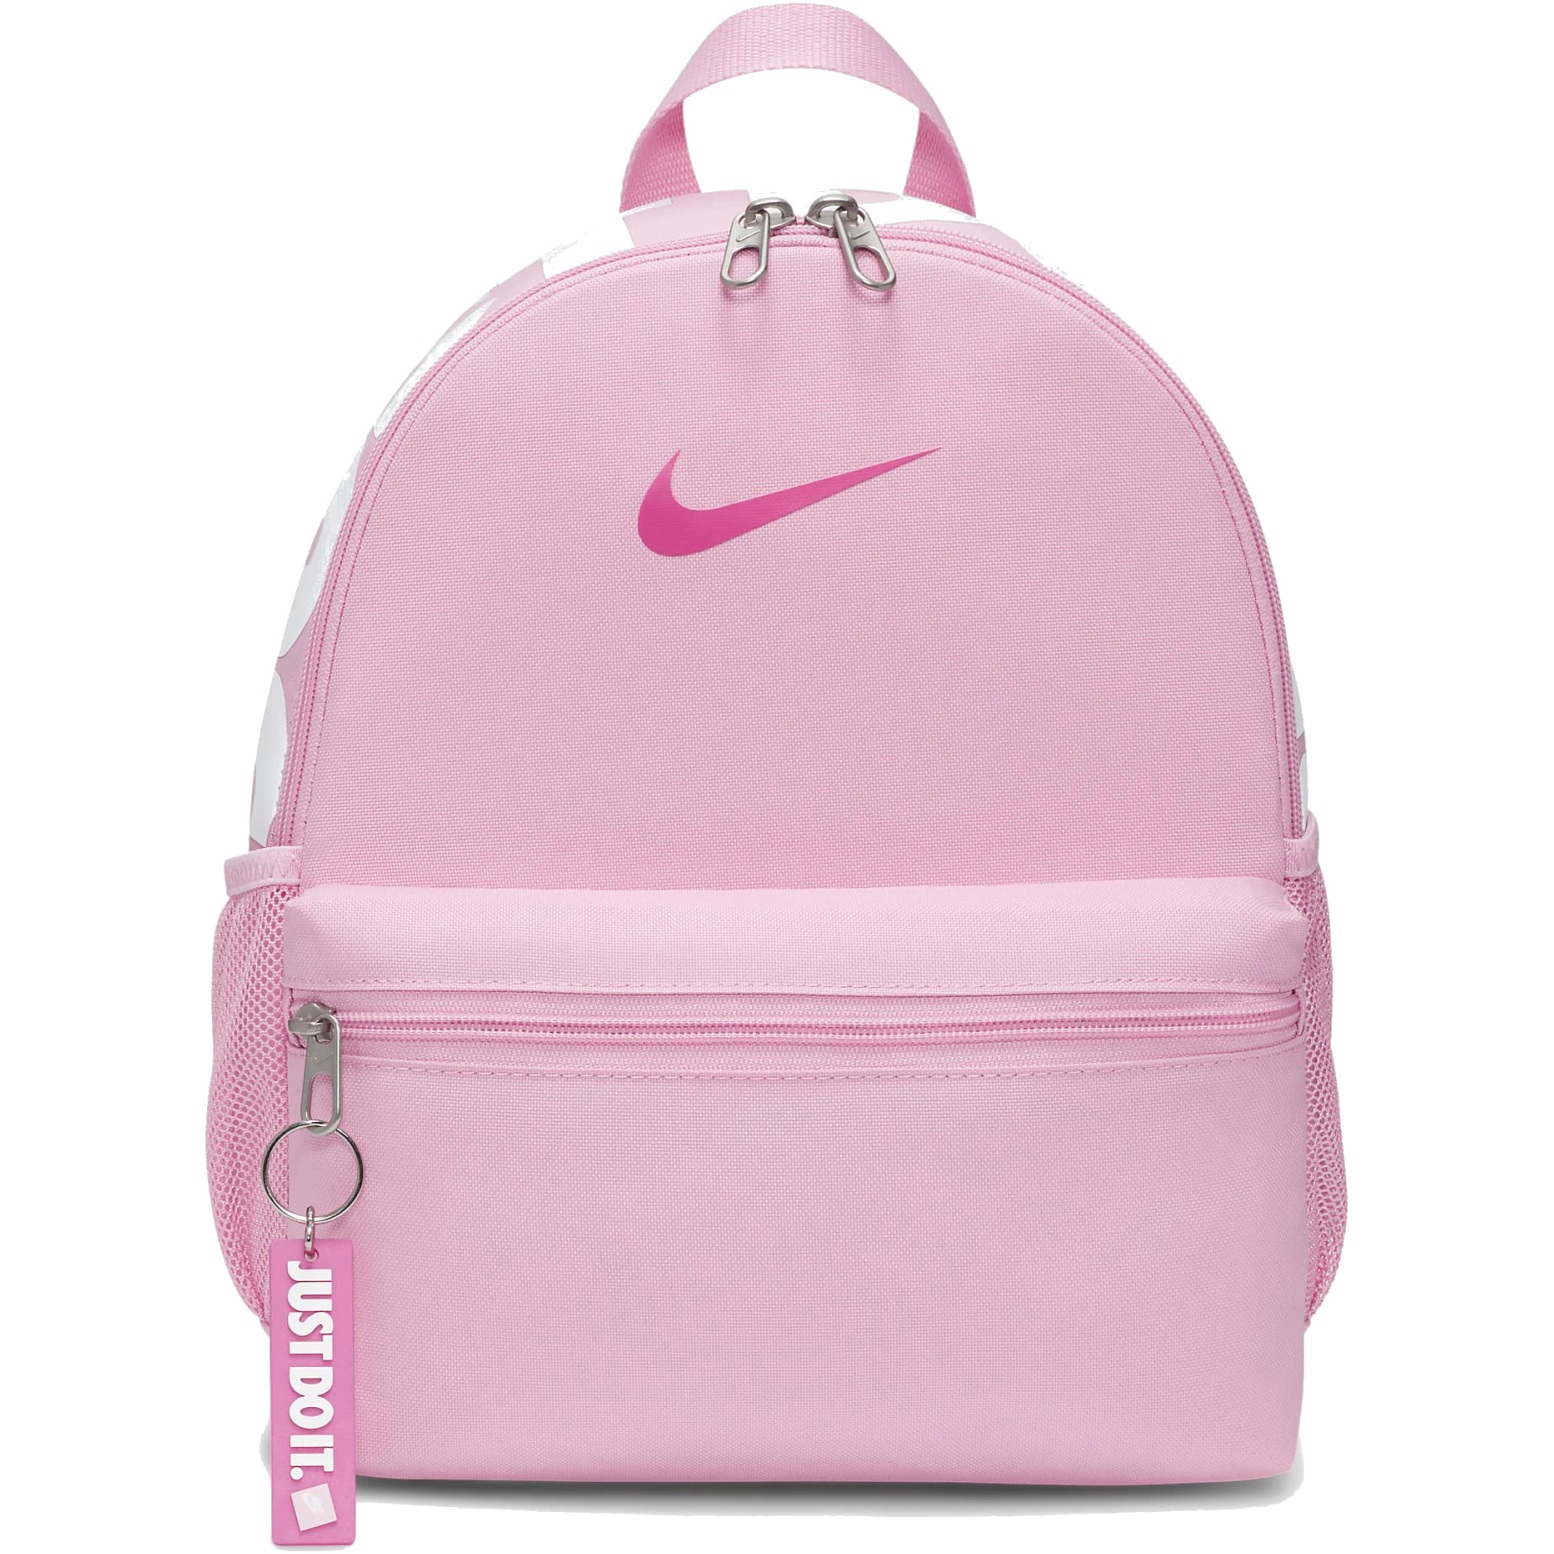 Produktbild von Nike Brasilia JDI Minirucksack für Kinder (11L) - pink rise/white/laser fuchsia DR6091-629